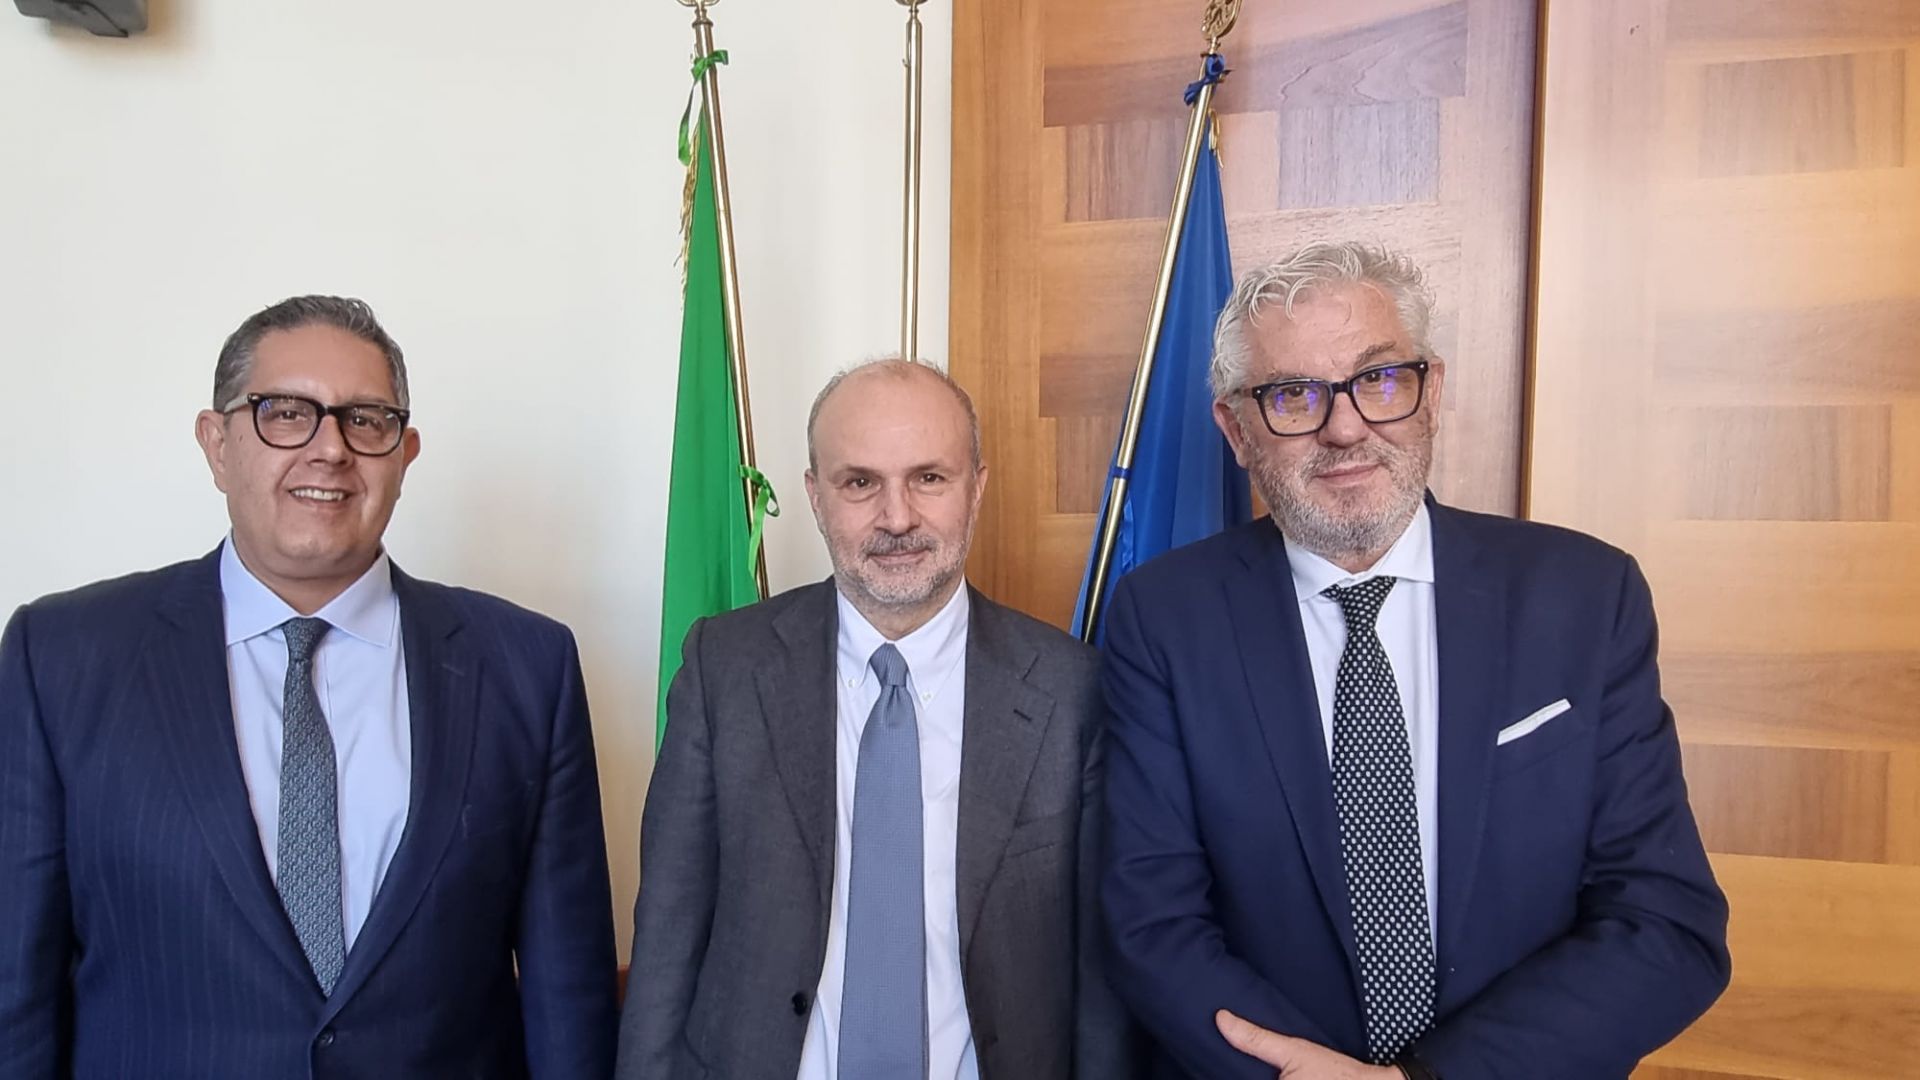 Liguria, Toti e Gratarola incontrano il ministro della Salute Schillaci: confermati gli investimenti per modernizzare la sanità regionale